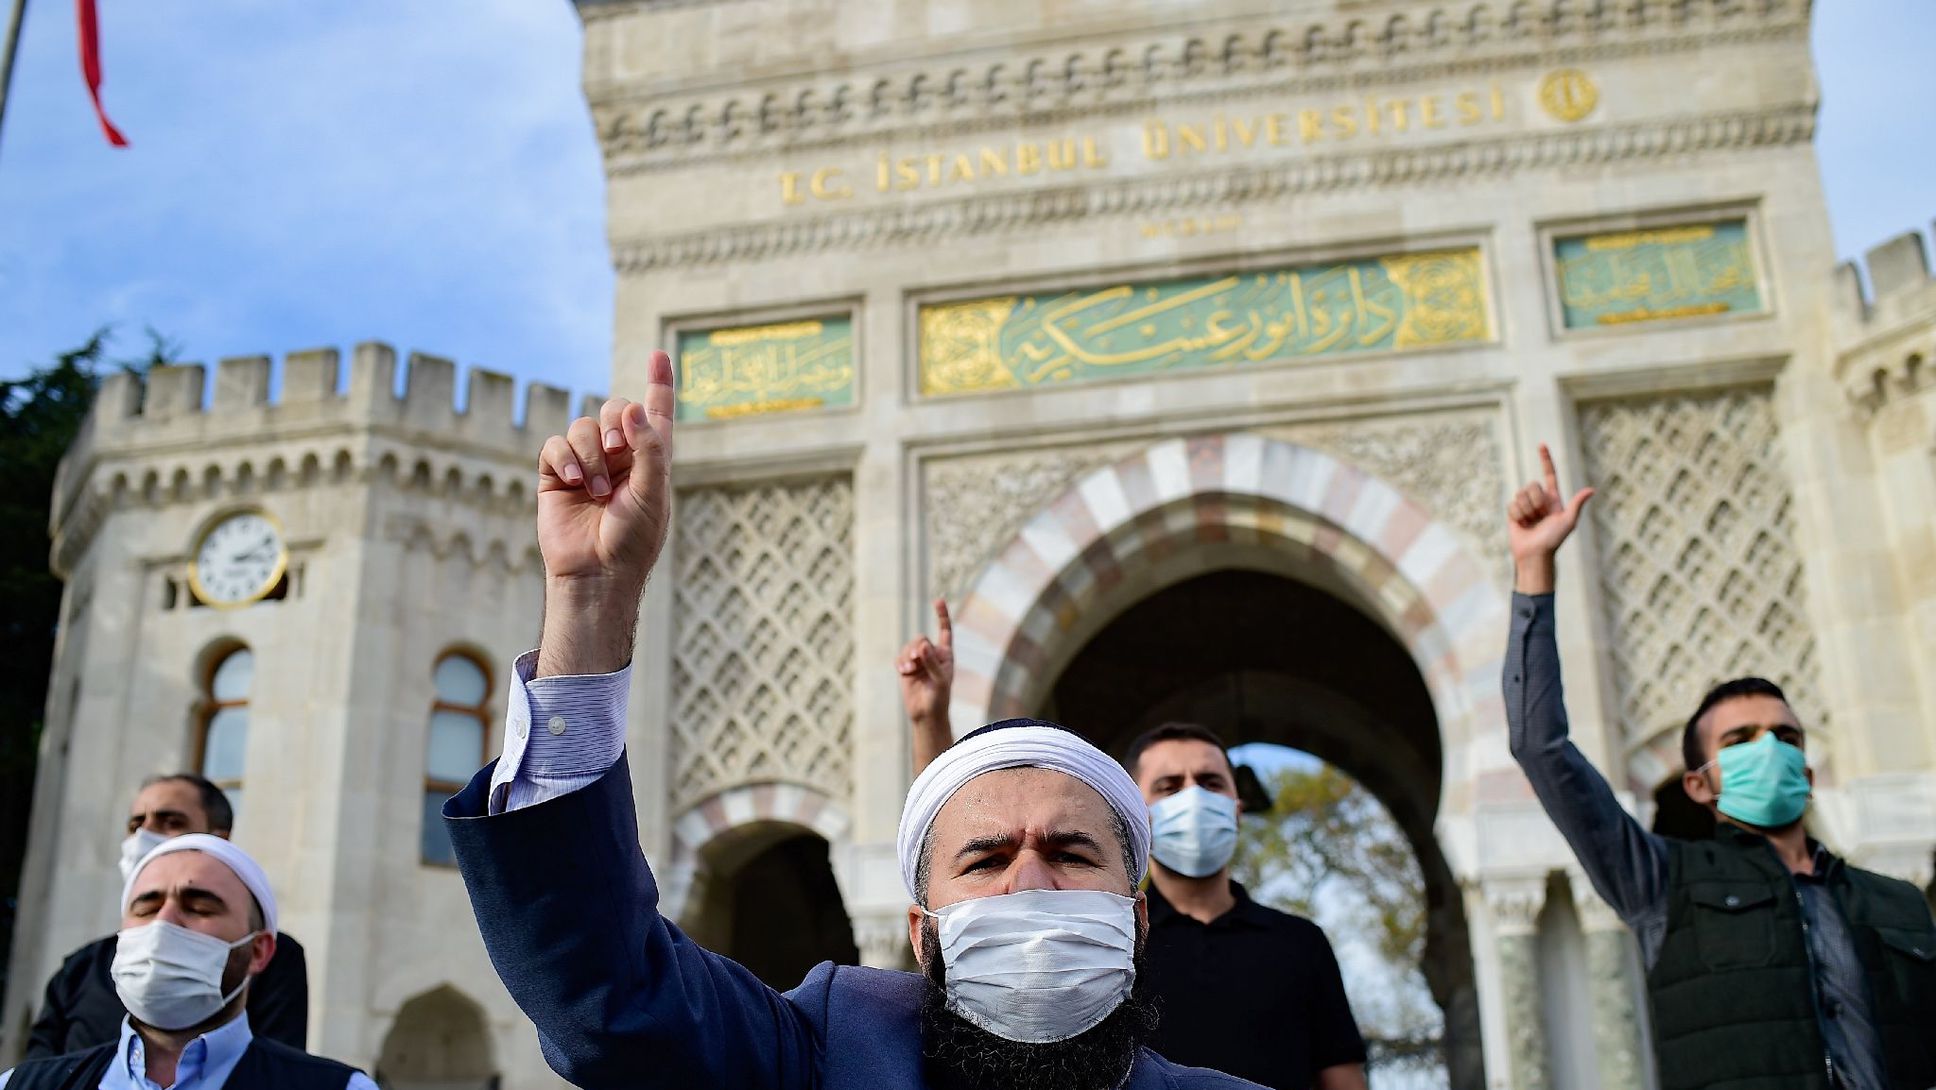 صراع صامت مغربي جزائري يفجر أزمة بإمامة المسلمين بفرنسا